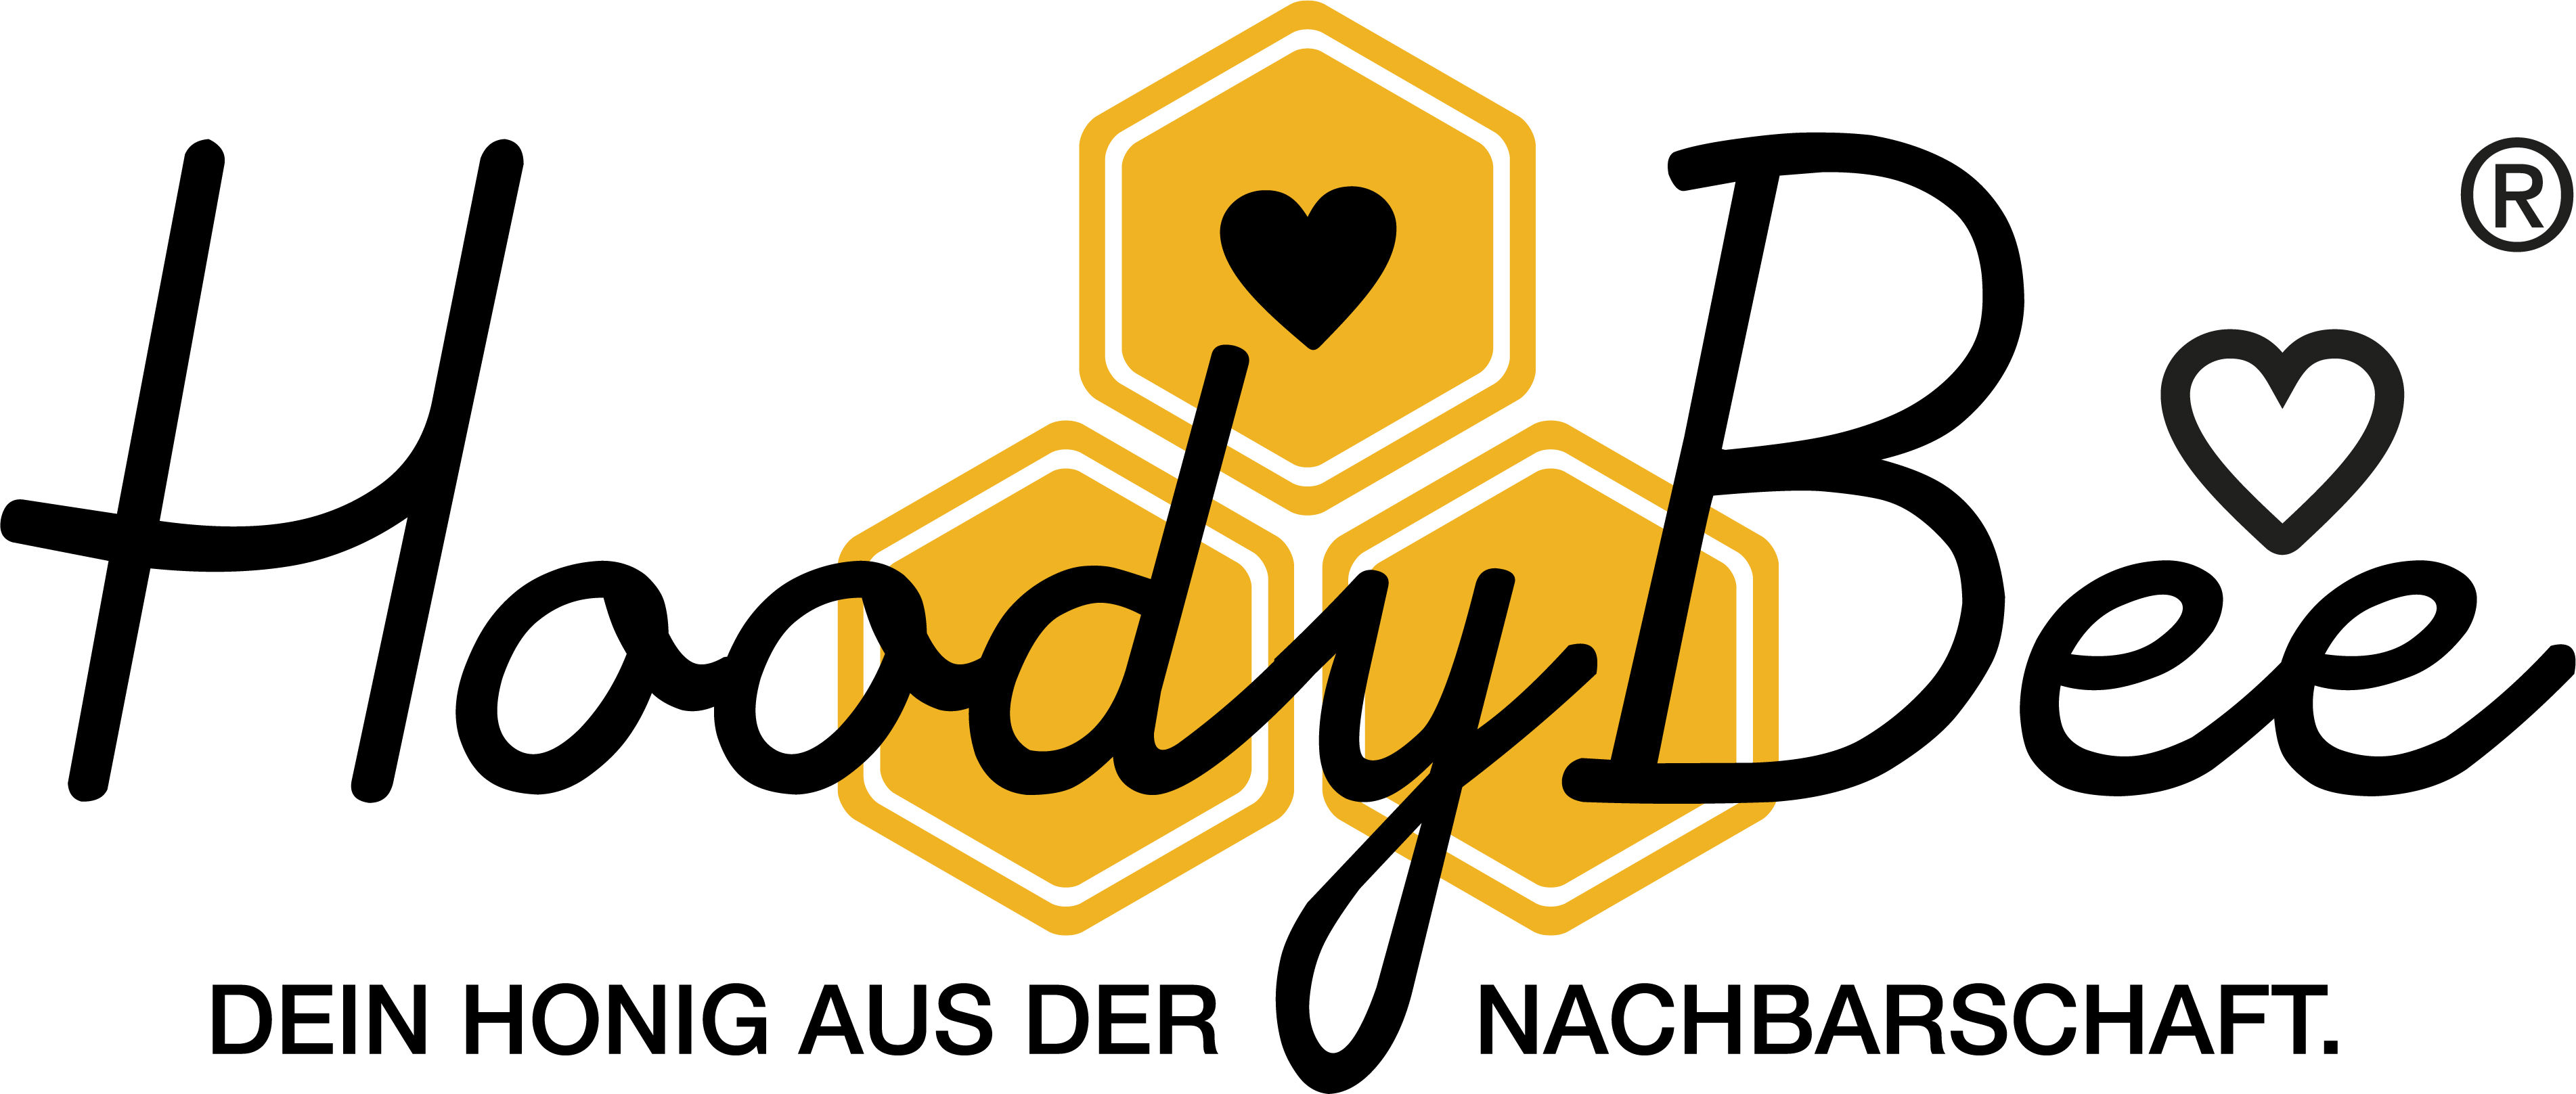 Logo des Unternehmens: HoodyBee @ Mr. Spareribs in Düsseldorf